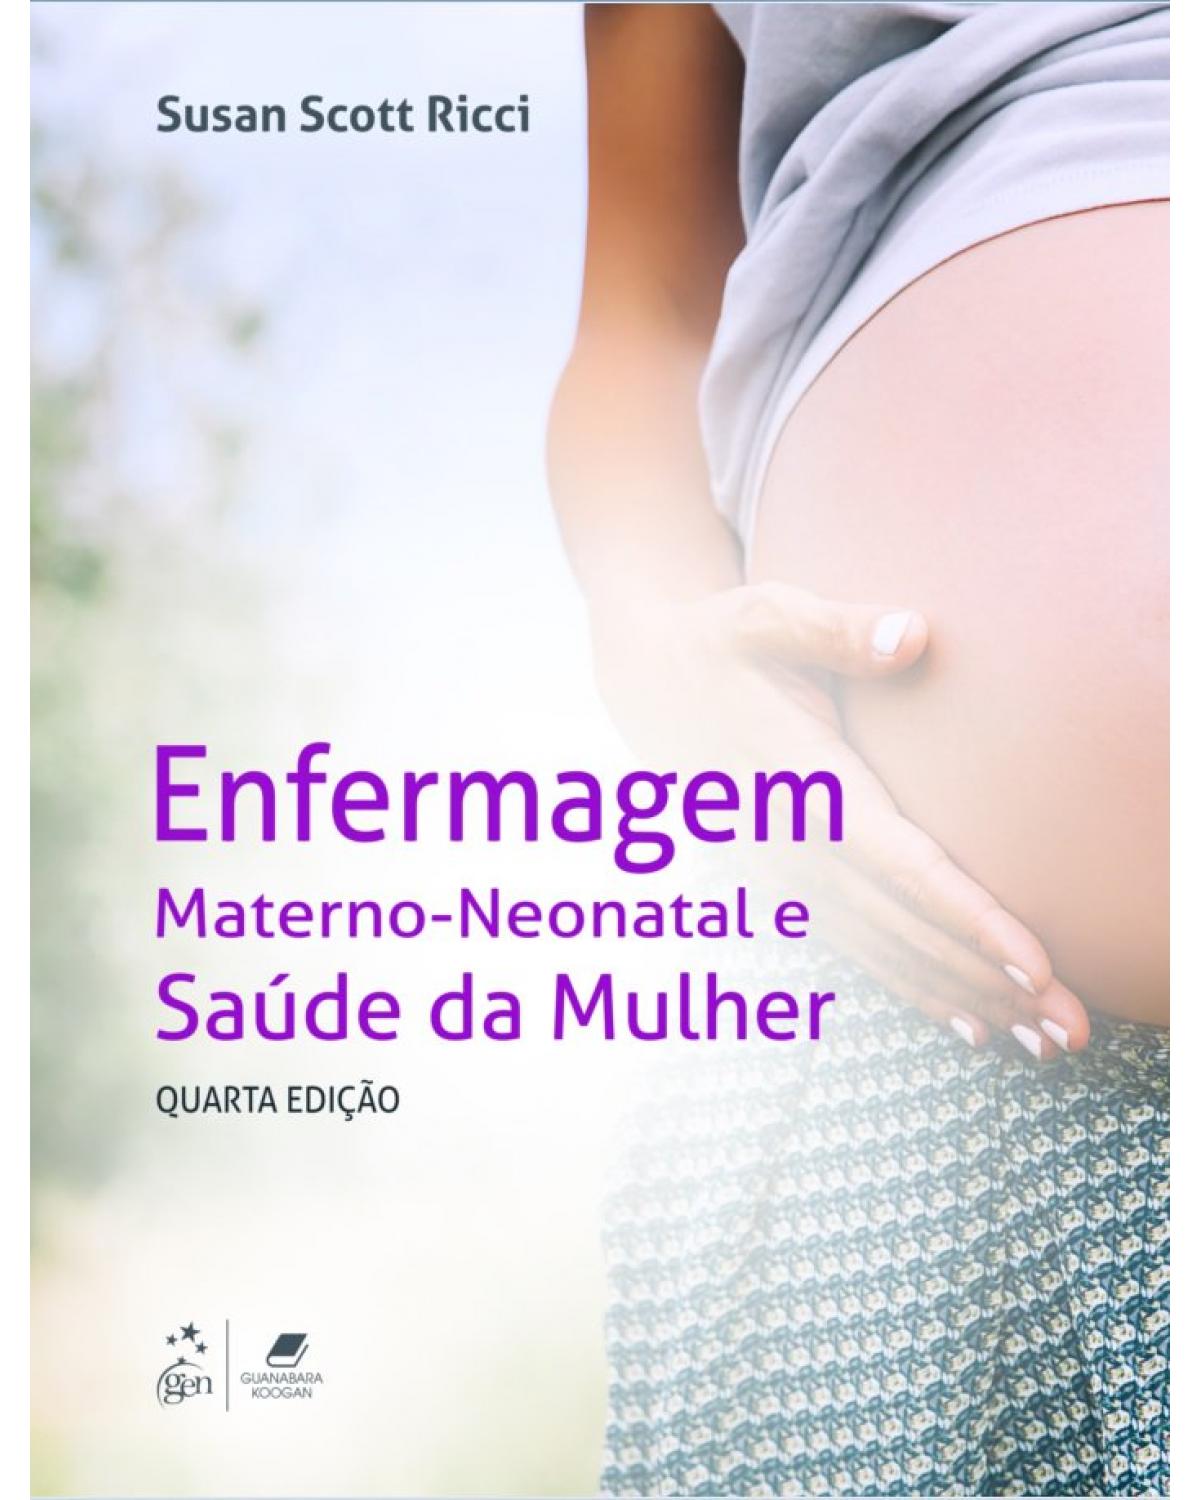 Enfermagem materno-neonatal e saúde da mulher - 4ª Edição | 2019